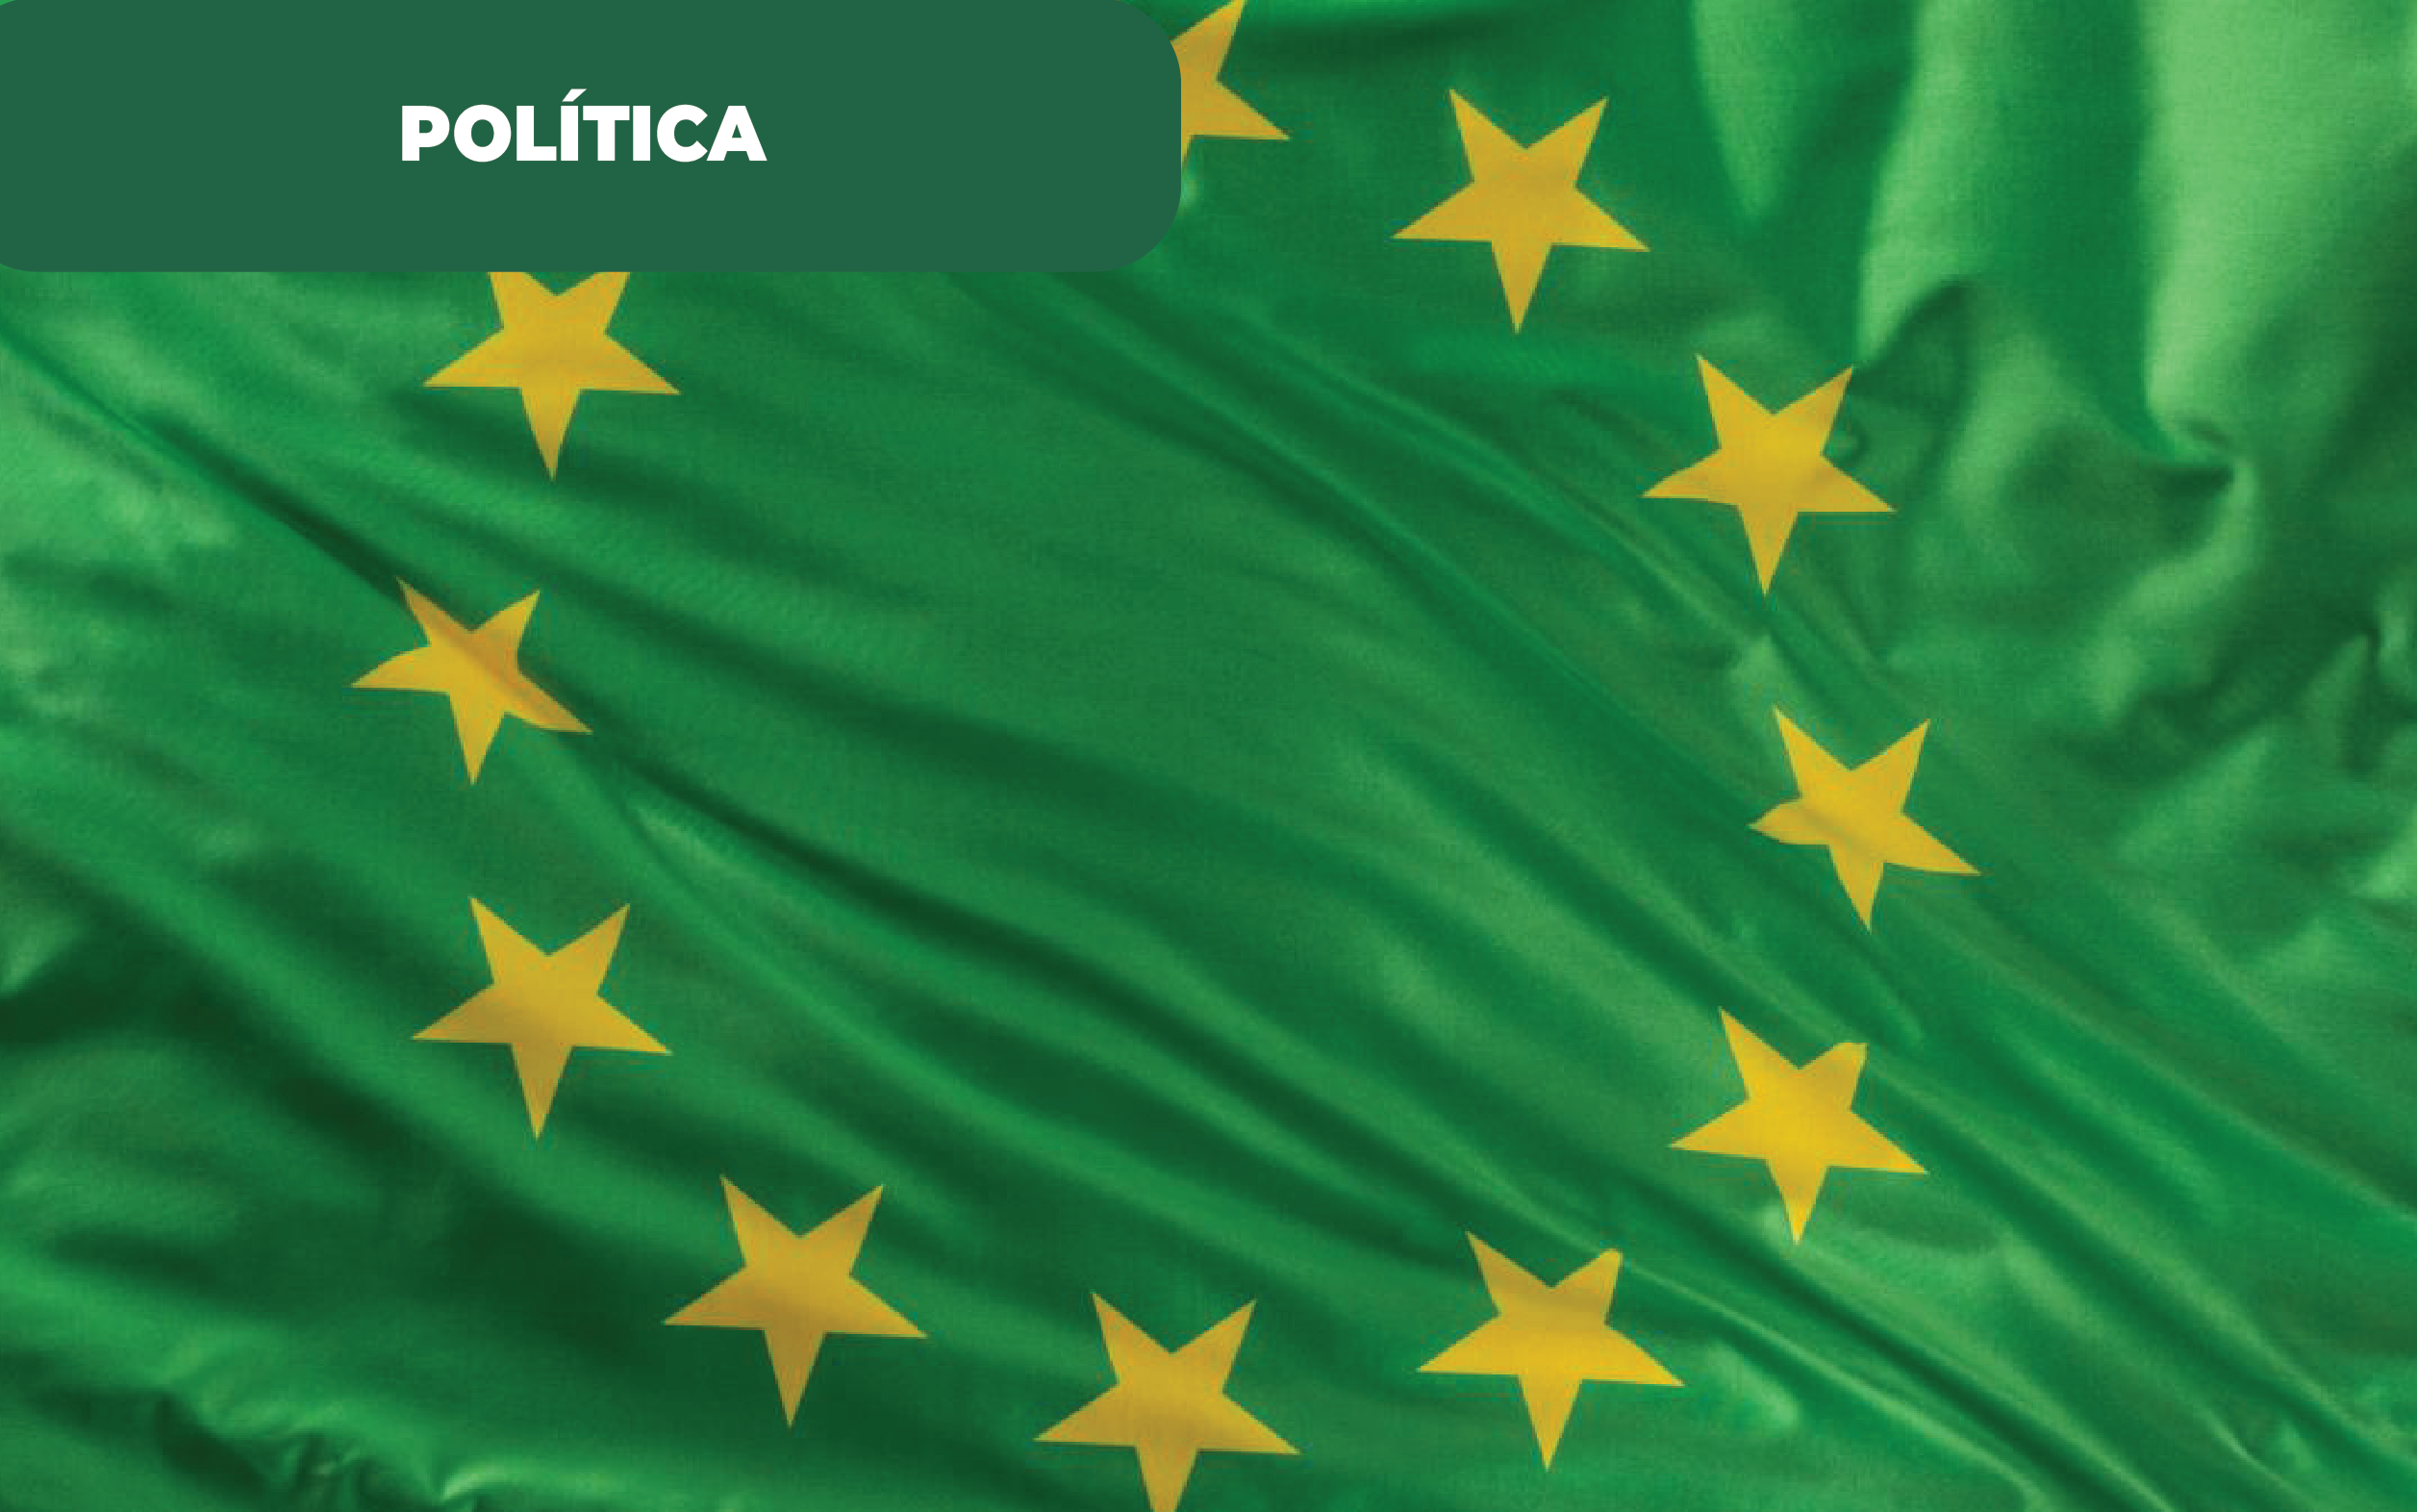 Imagem colorida da bandeira da União Europeia, com fundo verde e estrelas amarelas. Uma alusão à Europa verde e resposta da sociedade à rapidez da transição energética